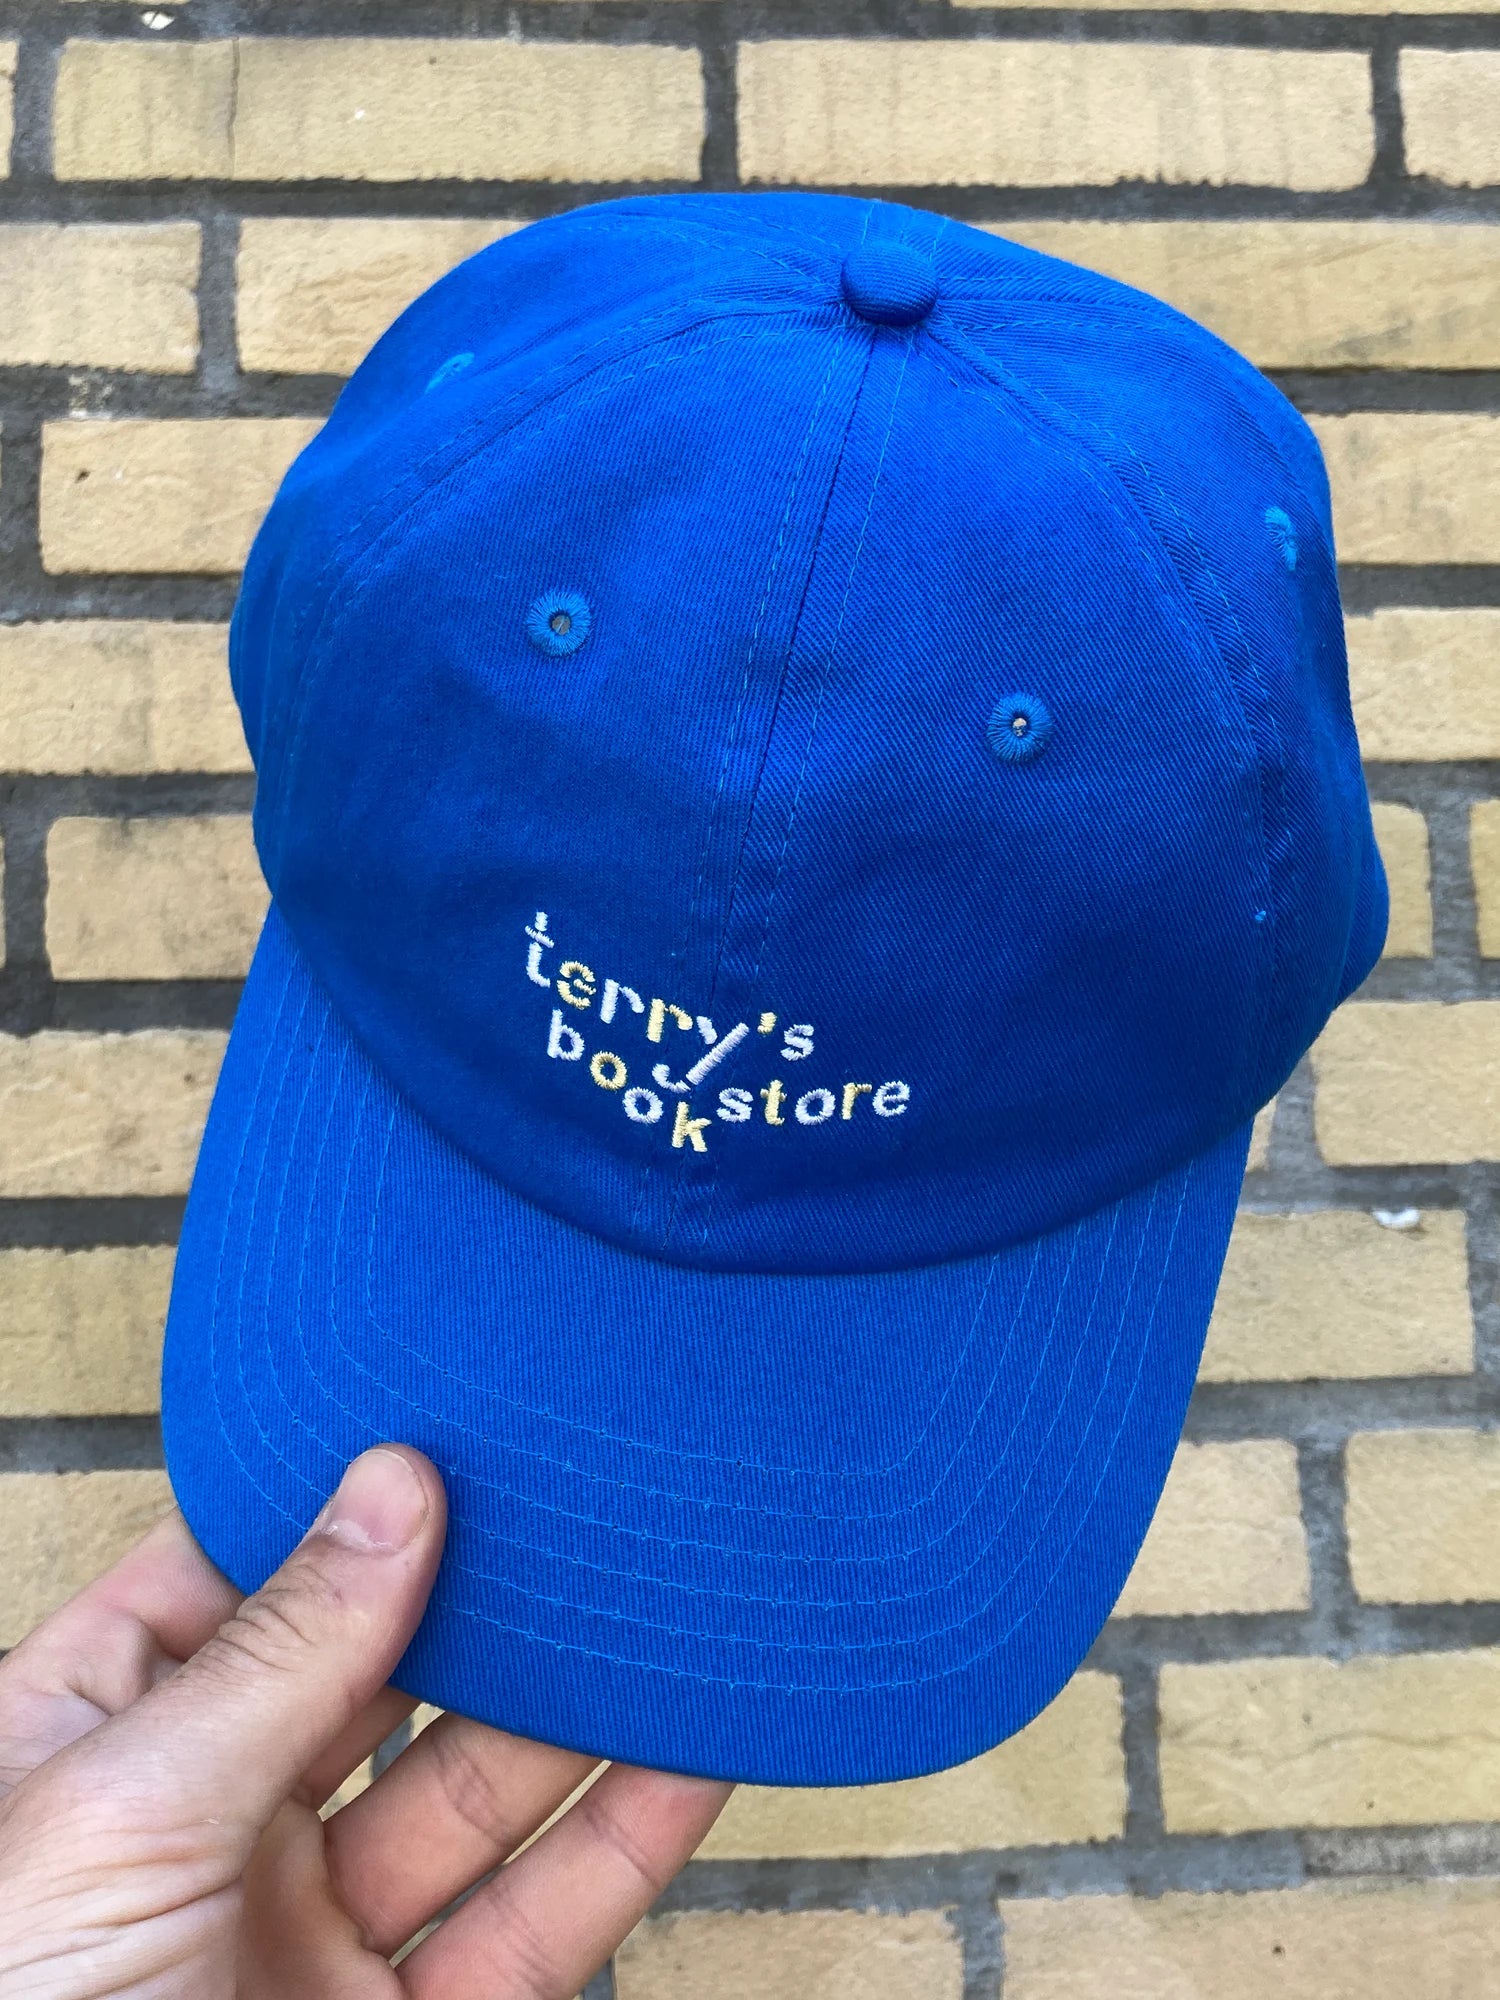 Terry's cap